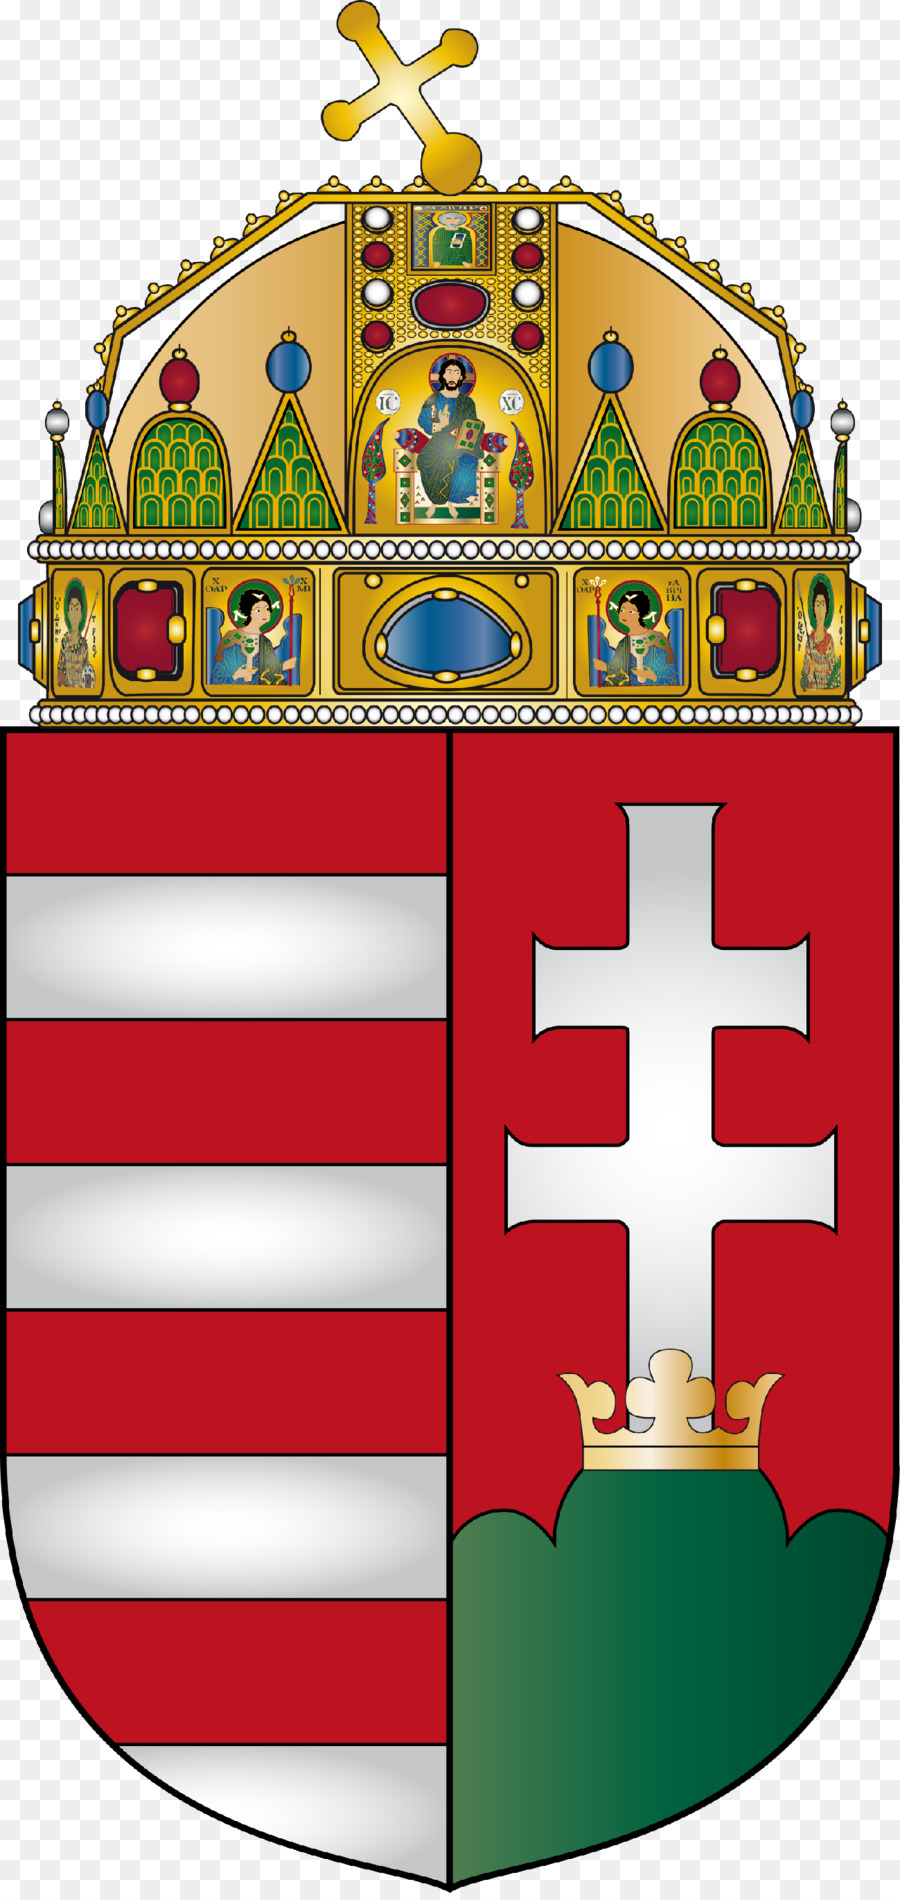 Wappen Ungarn österreich-Ungarn Königreich Ungarn Flagge von Ungarn - Cognac